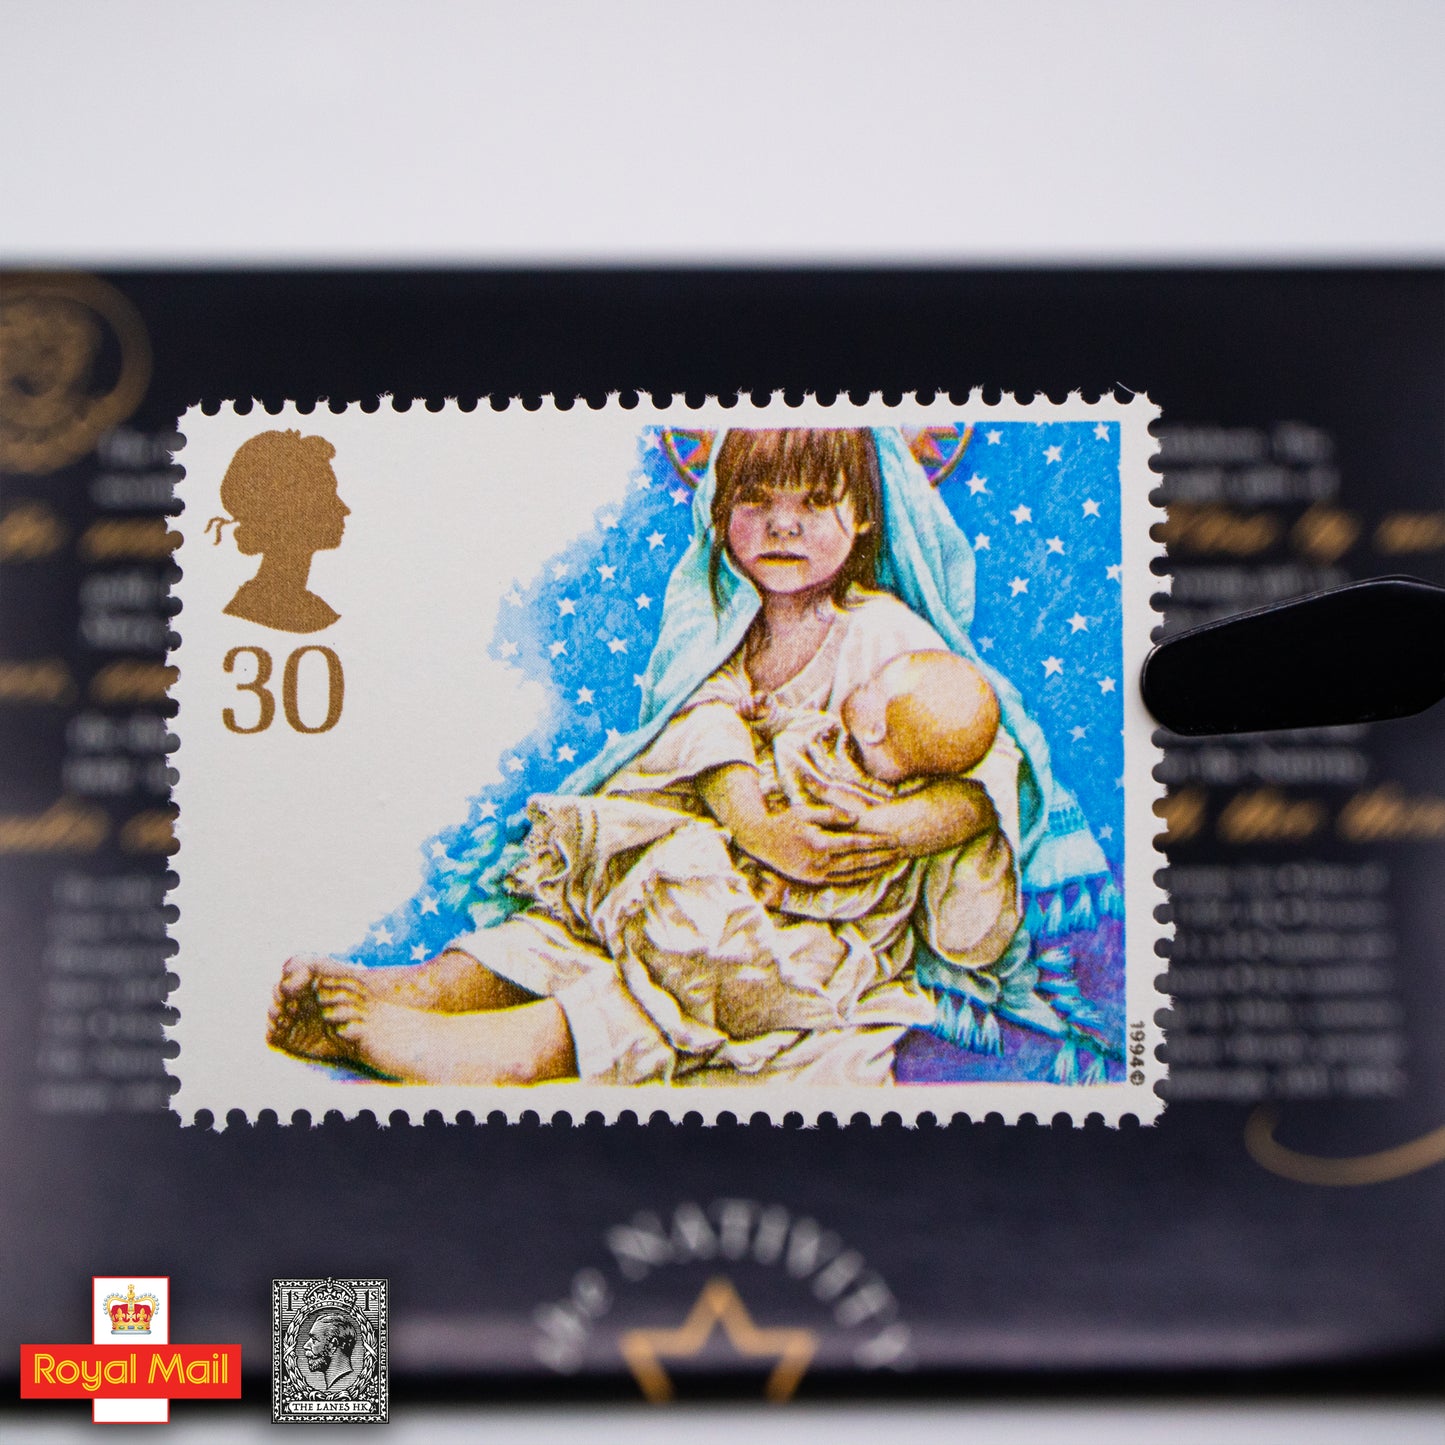 #252: 1994年 聖誕節 紀念郵票展示包